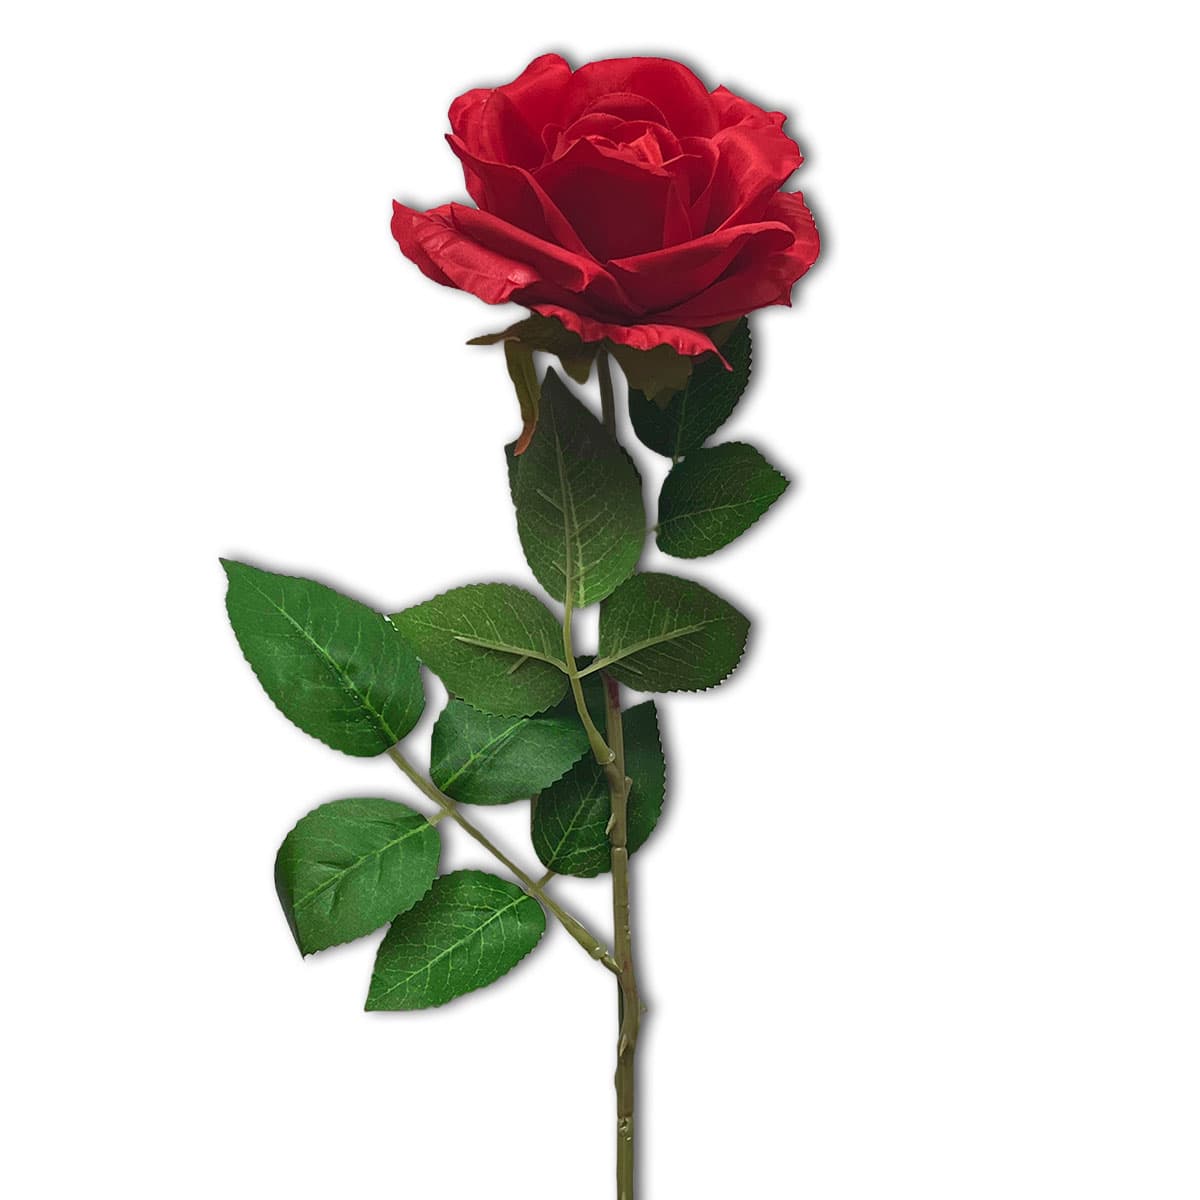 https://ca.littleflower.org/wp-content/uploads/2022/12/170-CA-Red-Rose-.jpg